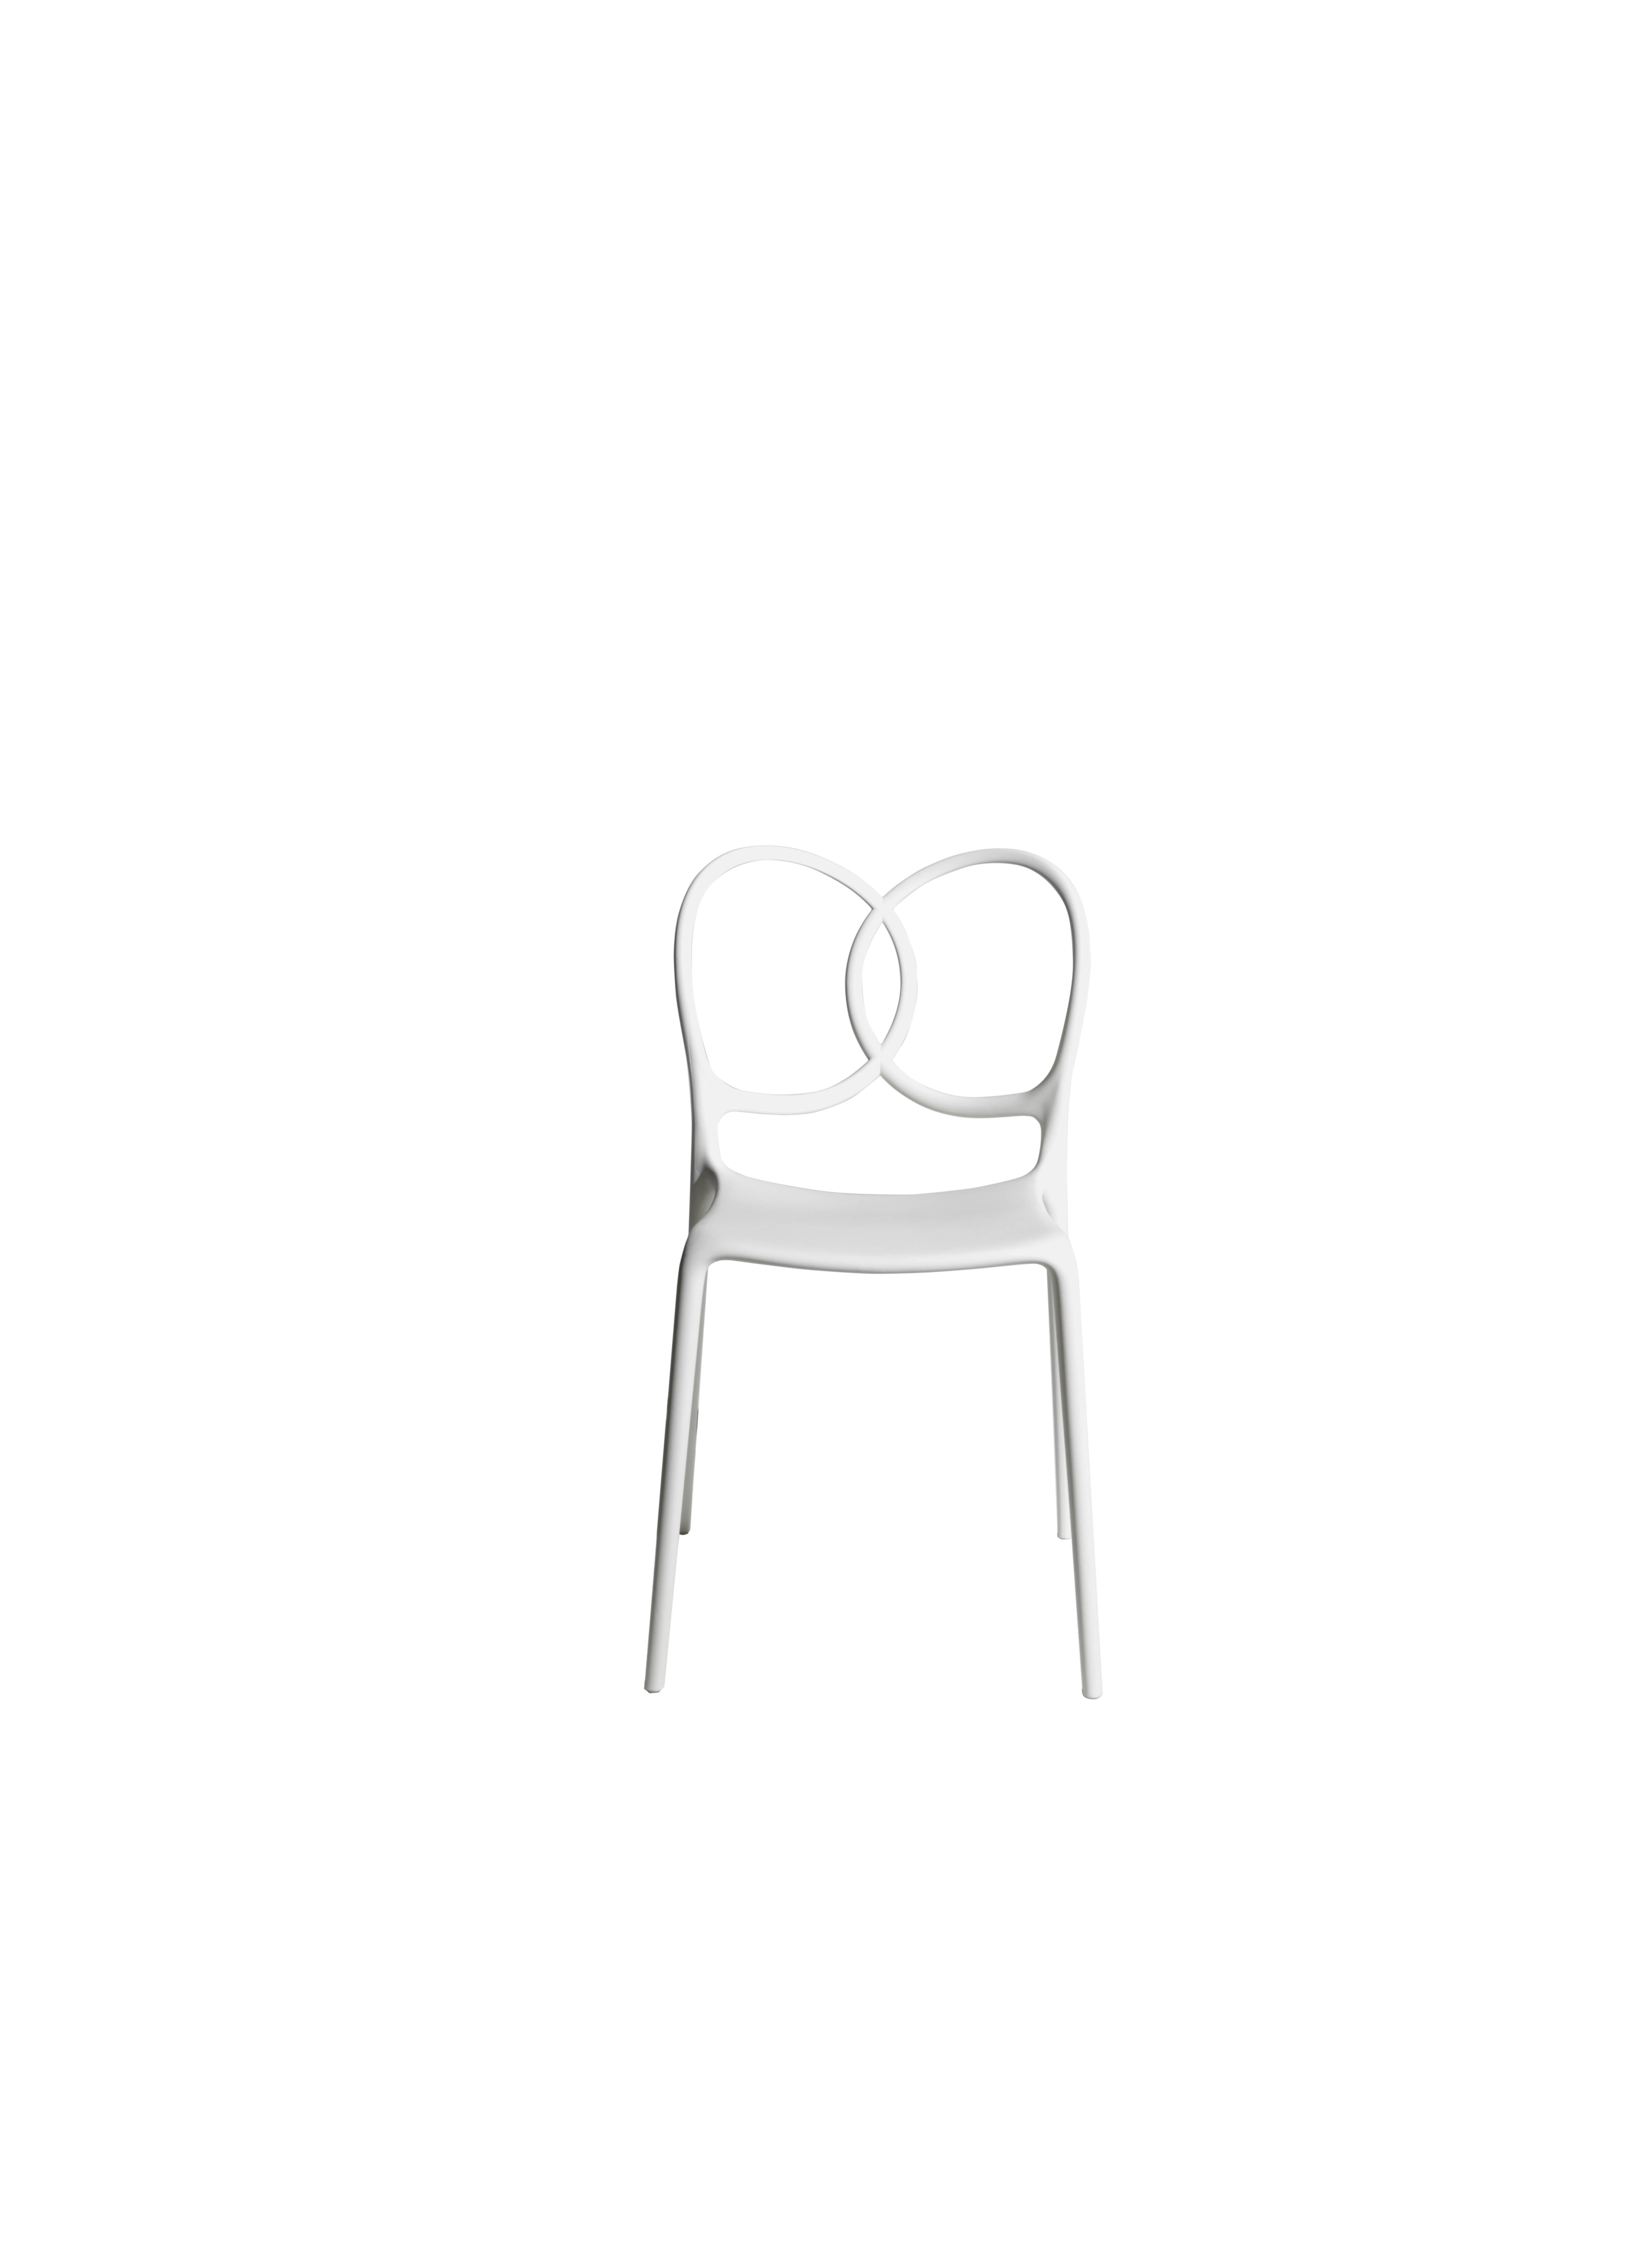 Der neue, von Ludovica+Roberto Palomba entworfene und von Driade hergestellte Stuhl - Sissi - ist ein skulpturales, sehr vielseitiges, selbstzentriertes und zeitgenössisches Stück. Sissi ist aus Polypropylen-Copolymer mit Glasfasern, natürlichen